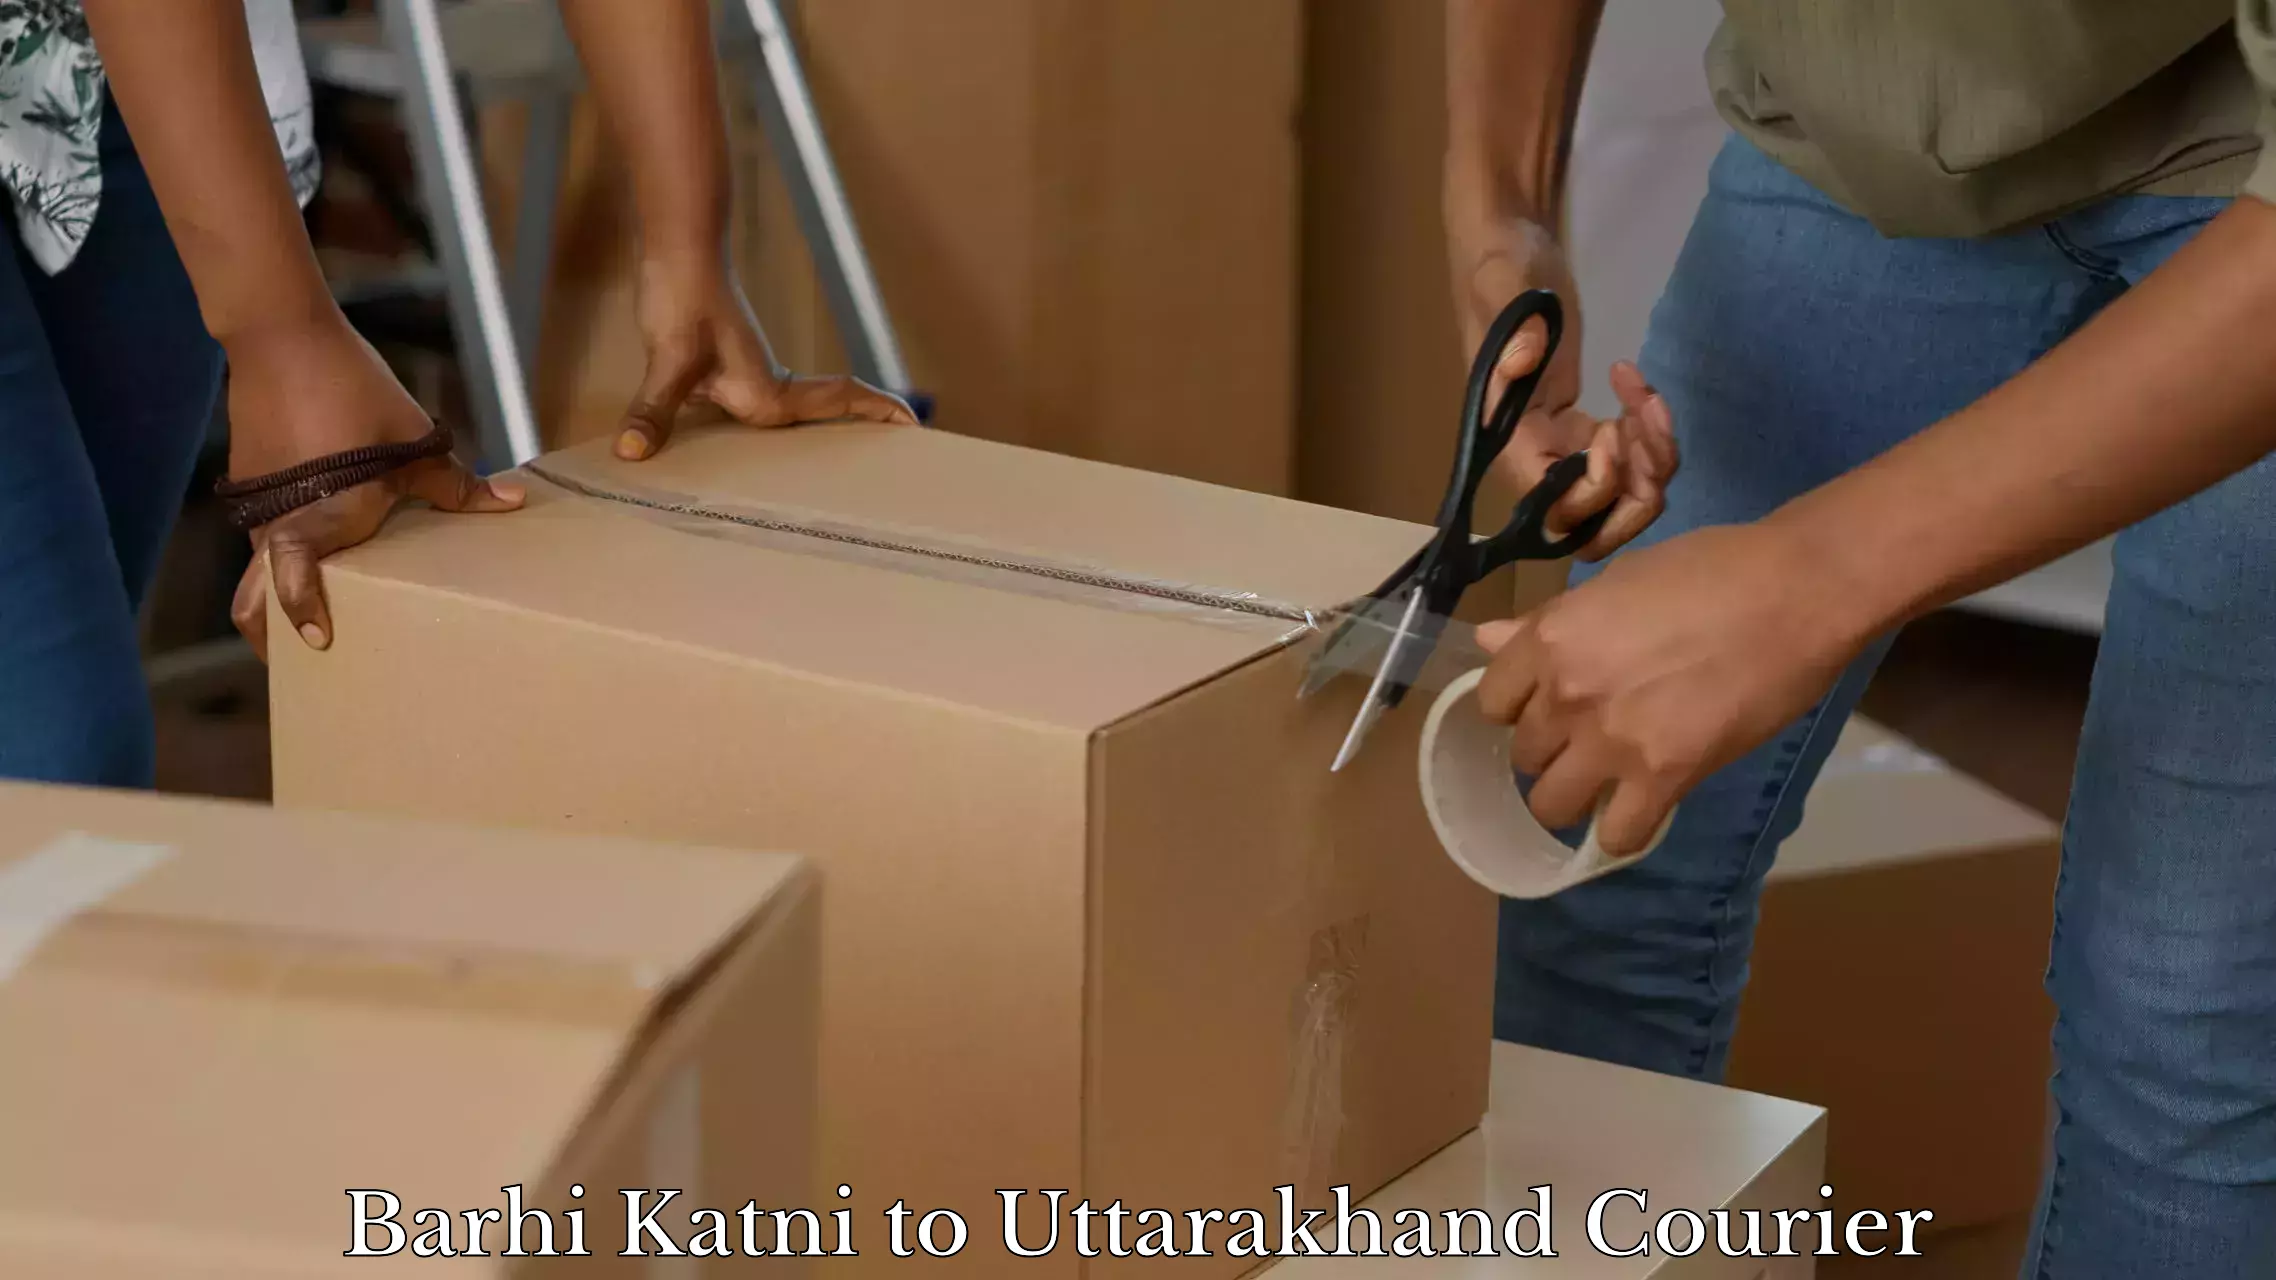 Luggage transport service Barhi Katni to Uttarakhand